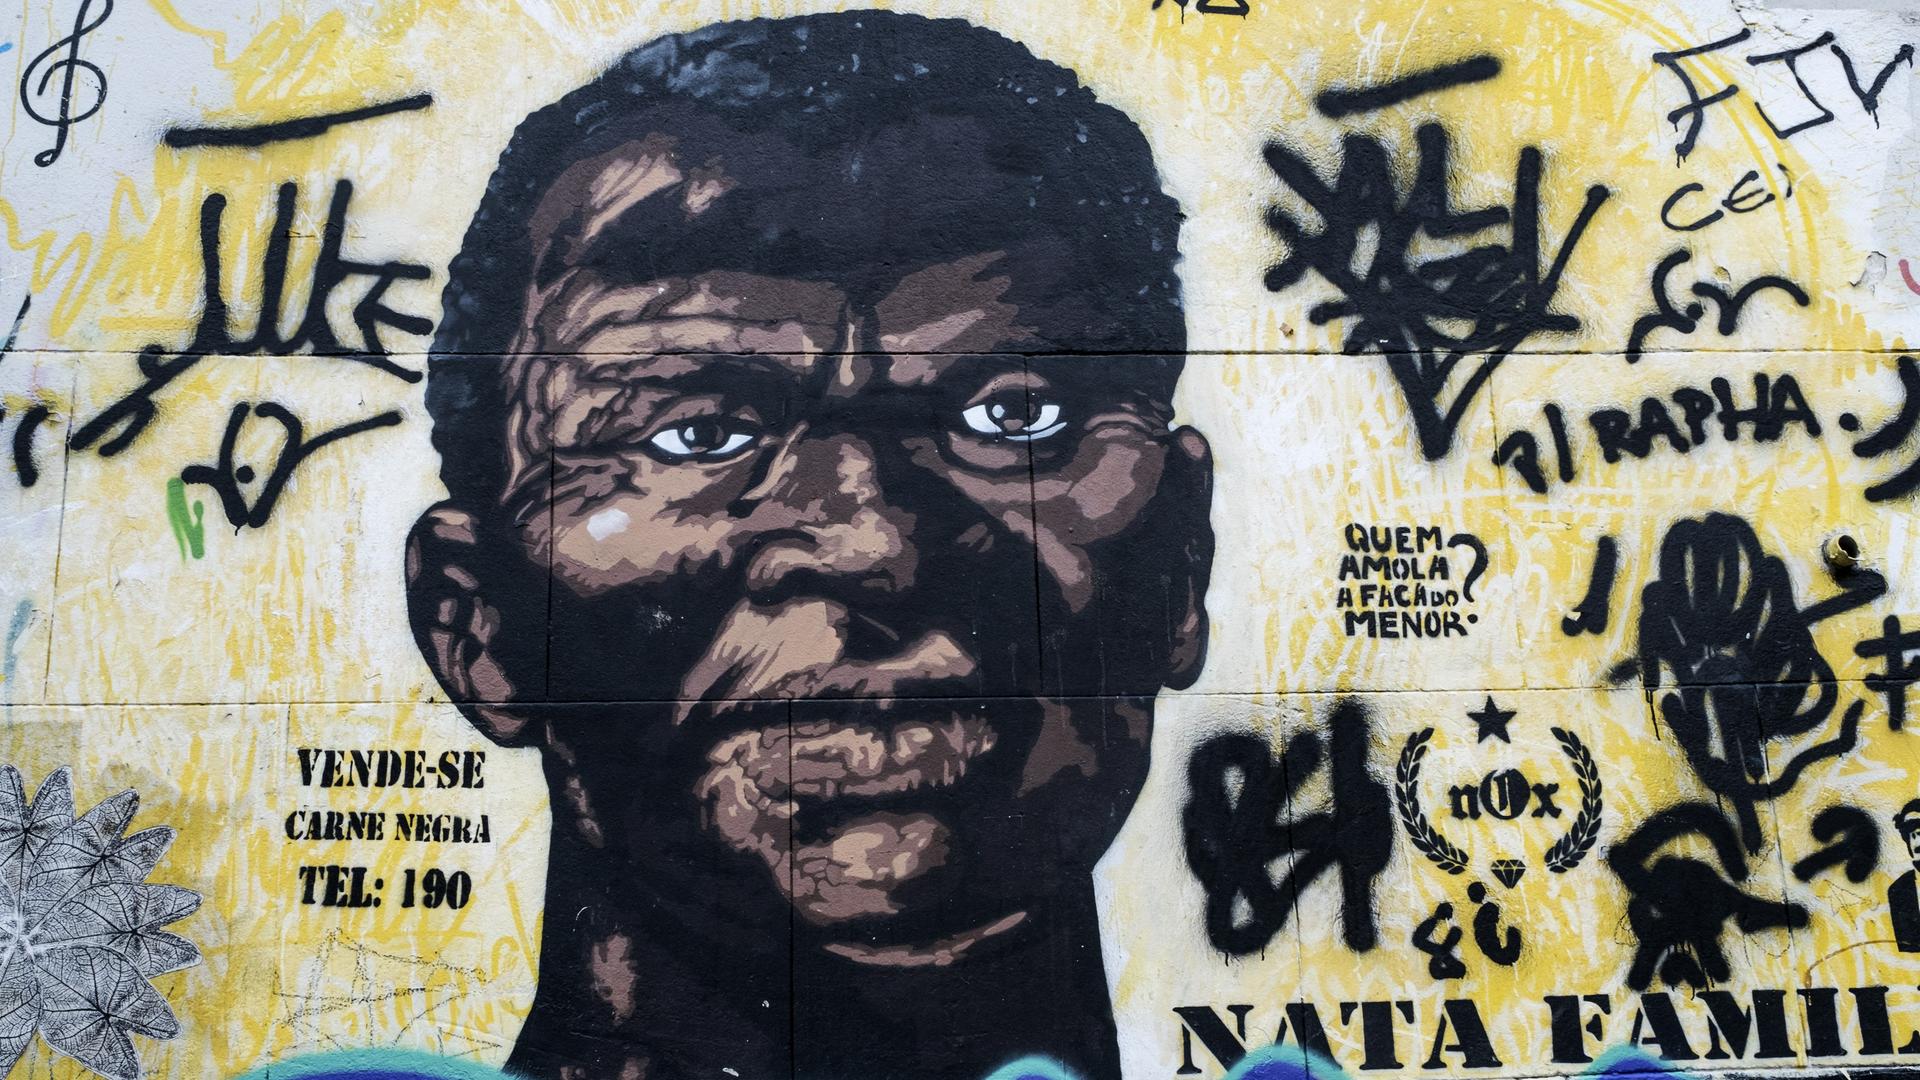 "Man verkauft - Schwarzes Fleisch - Tel: 190" steht neben der Wandmalerei eines großen Männerporträts im ehemaligen Sklavenviertel an der Pedra do Sal in Rio de Janeiro. 